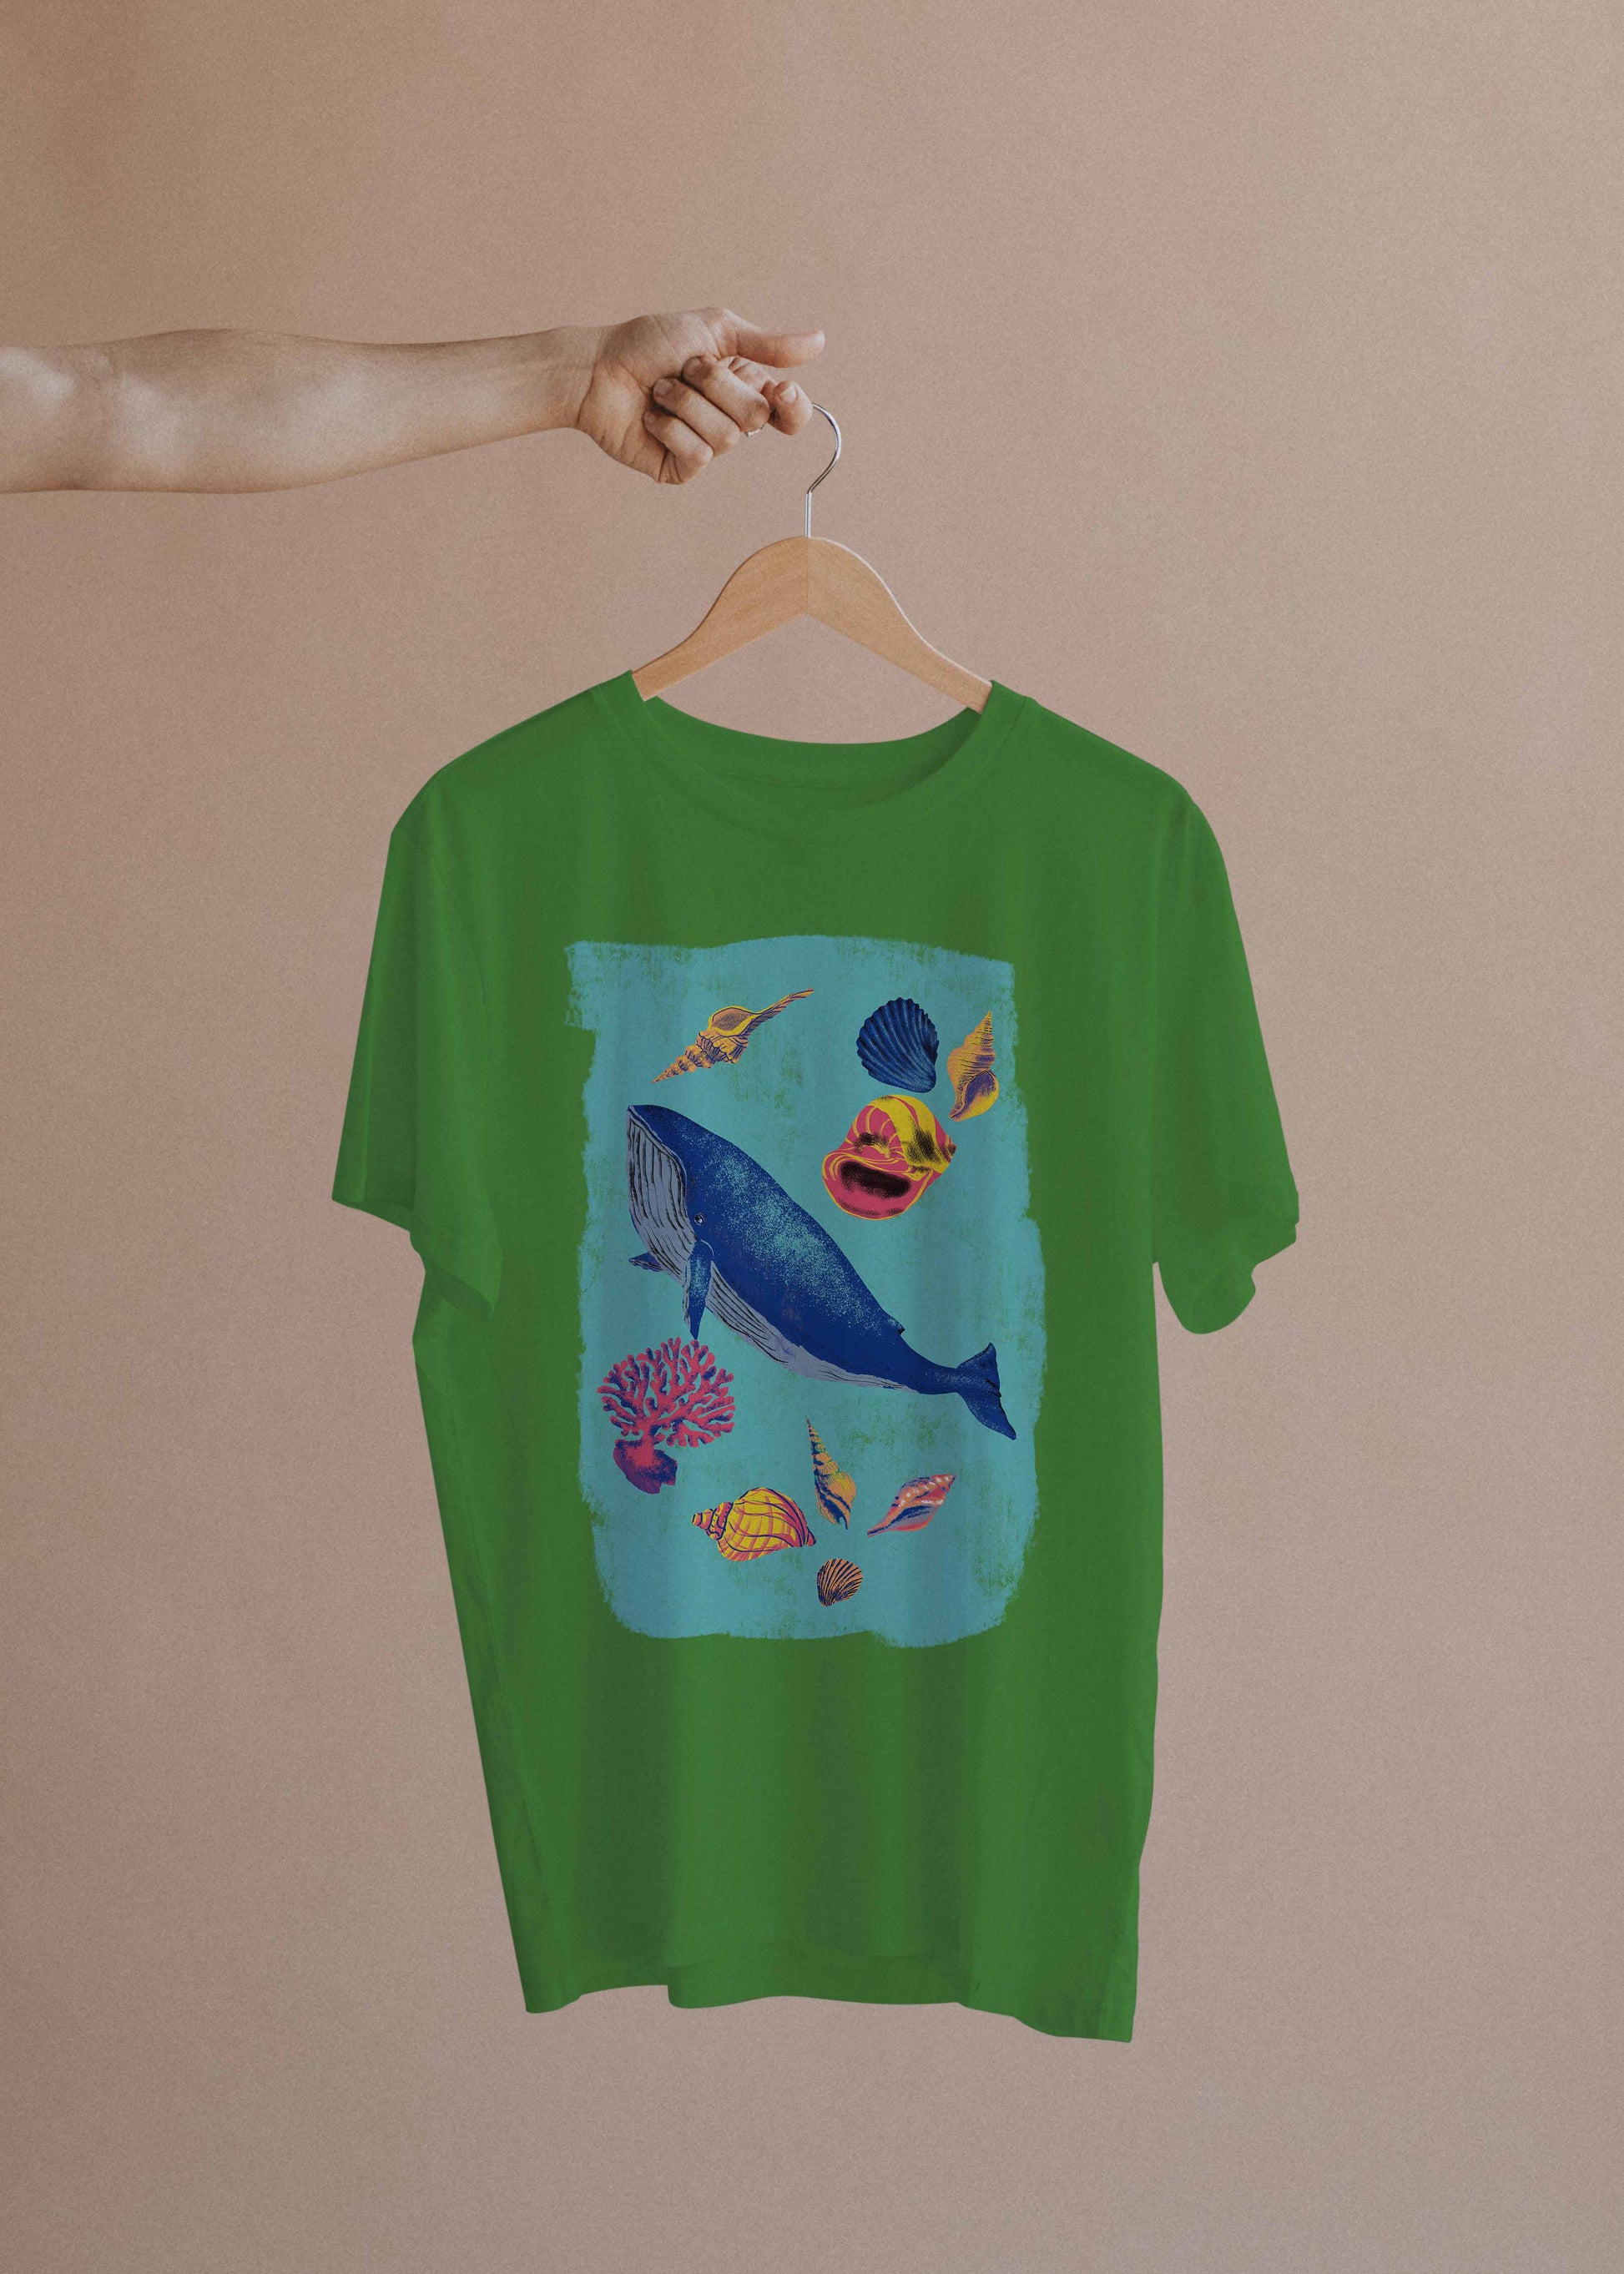 Camiseta Mar Profundo - Masculino -camiseta- Editora Datum